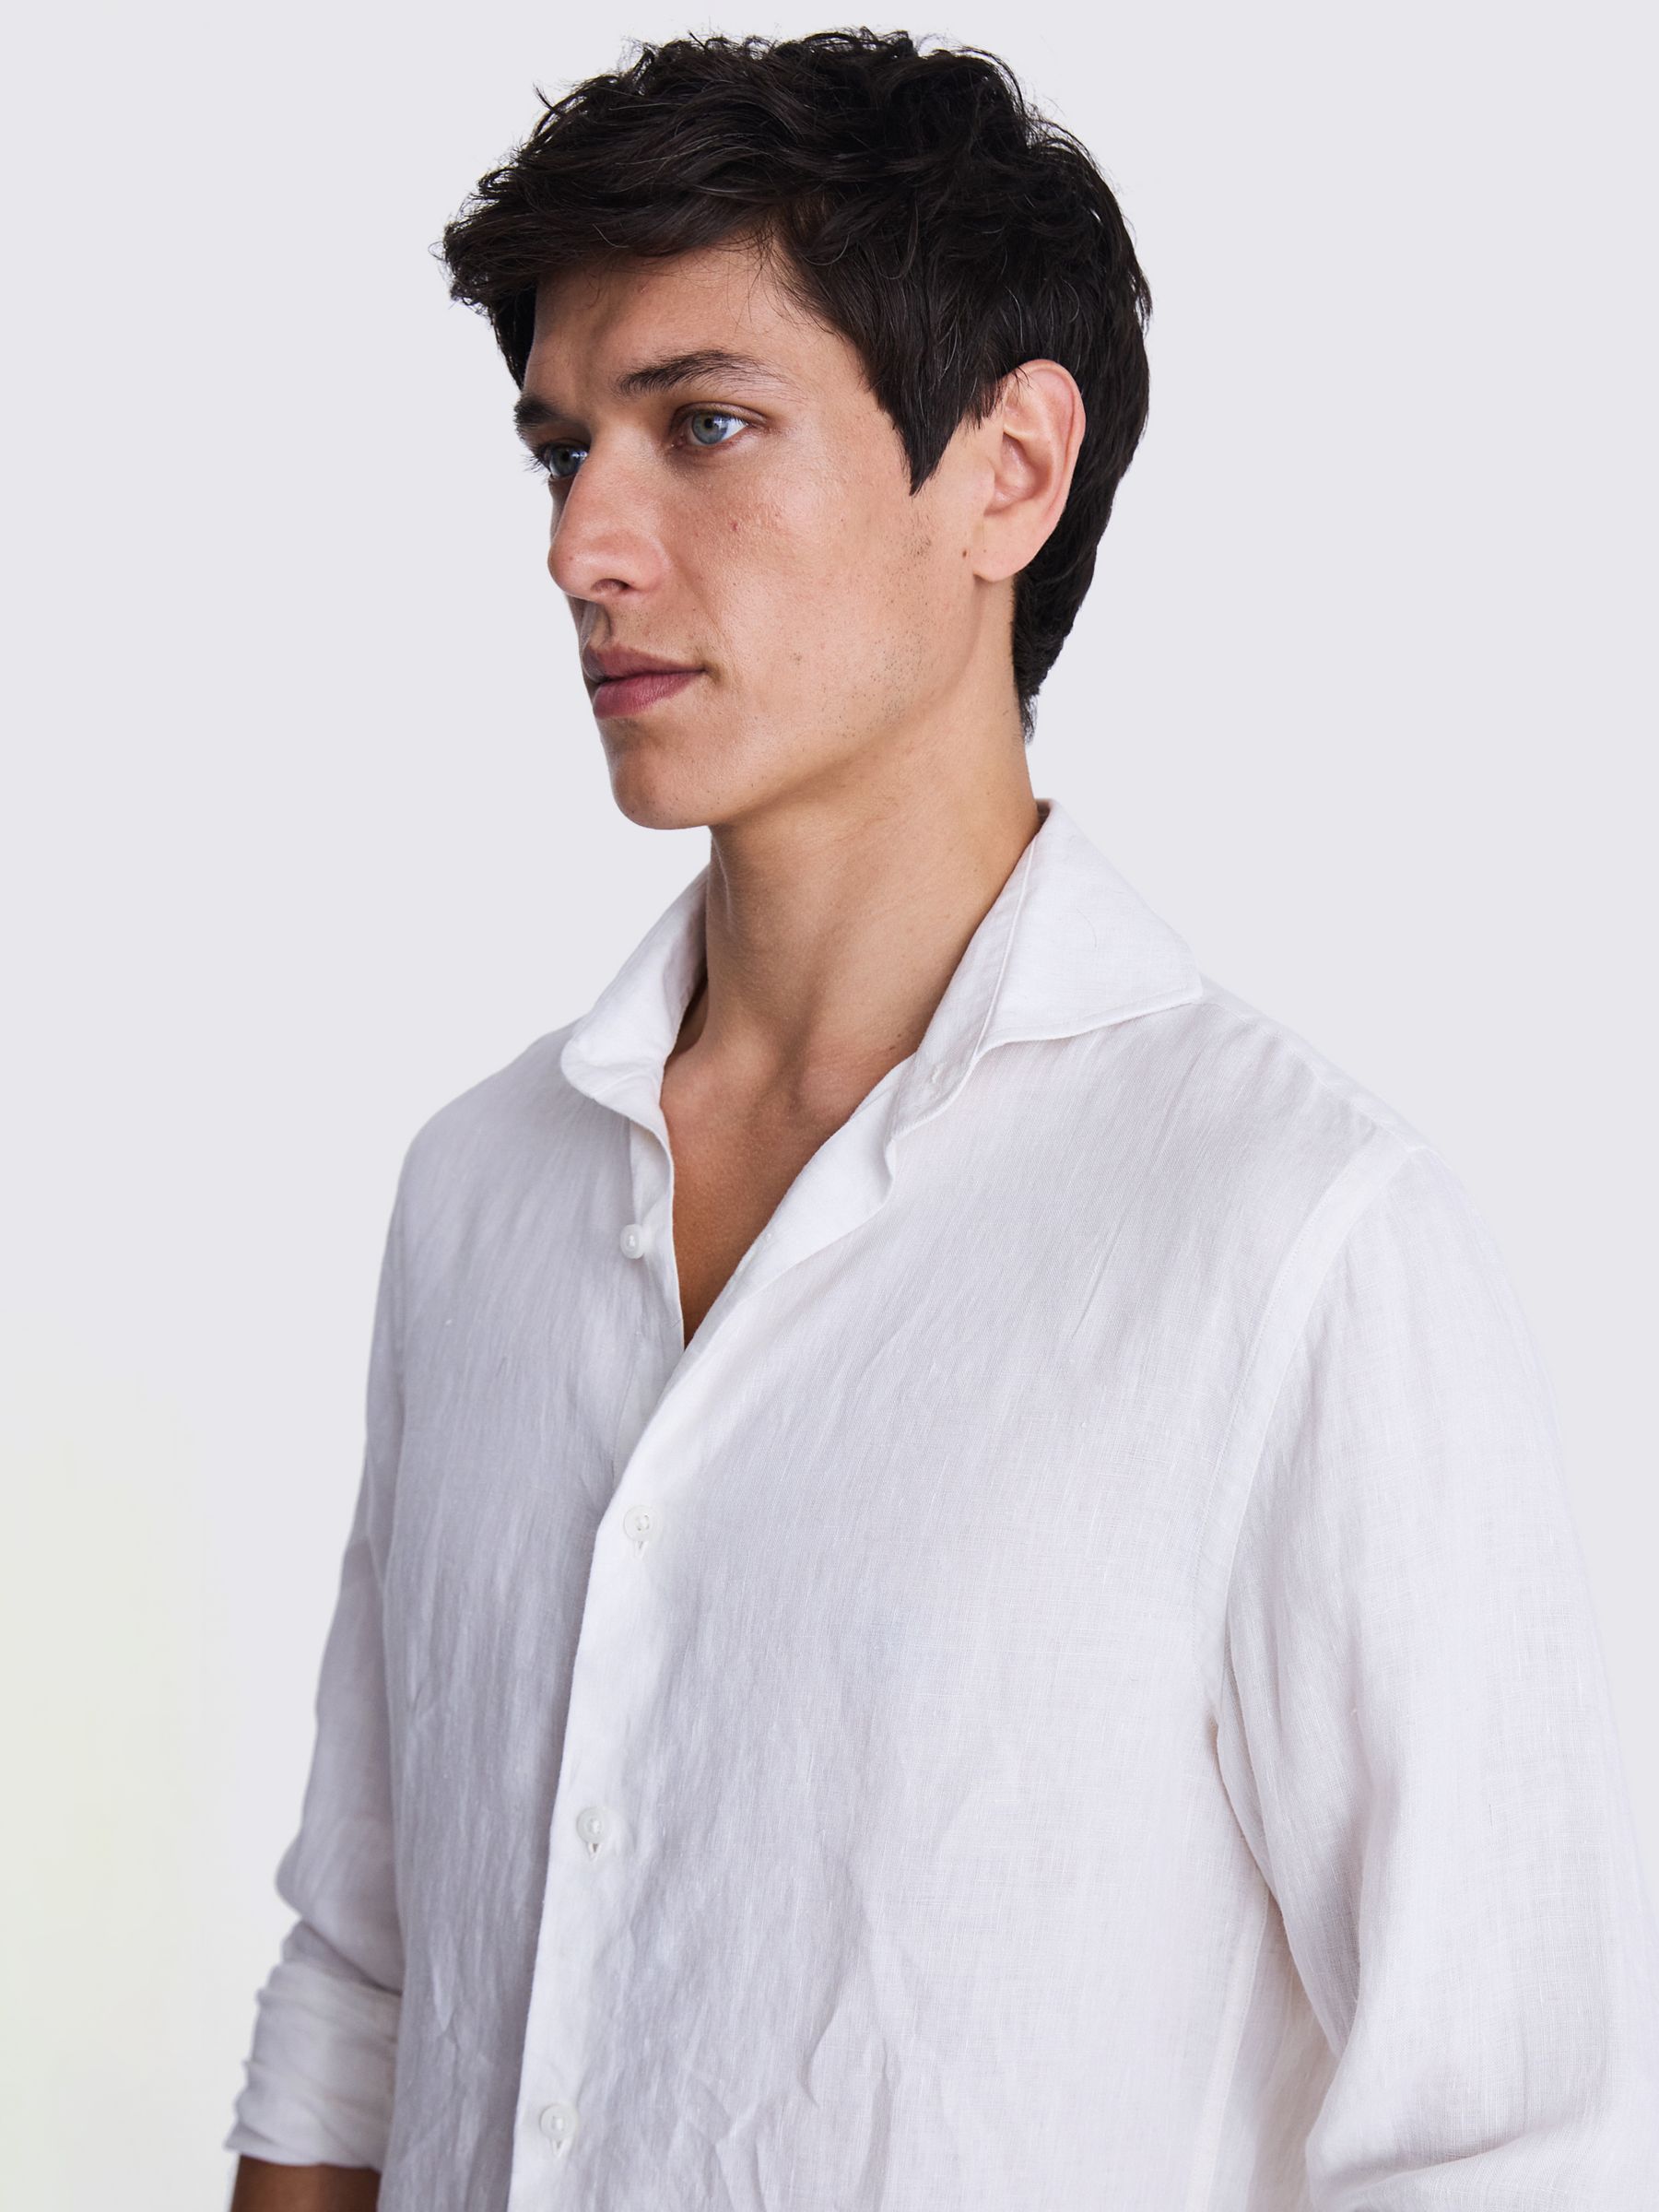 Moss Tailored Fit Linen Shirt, White, XXL